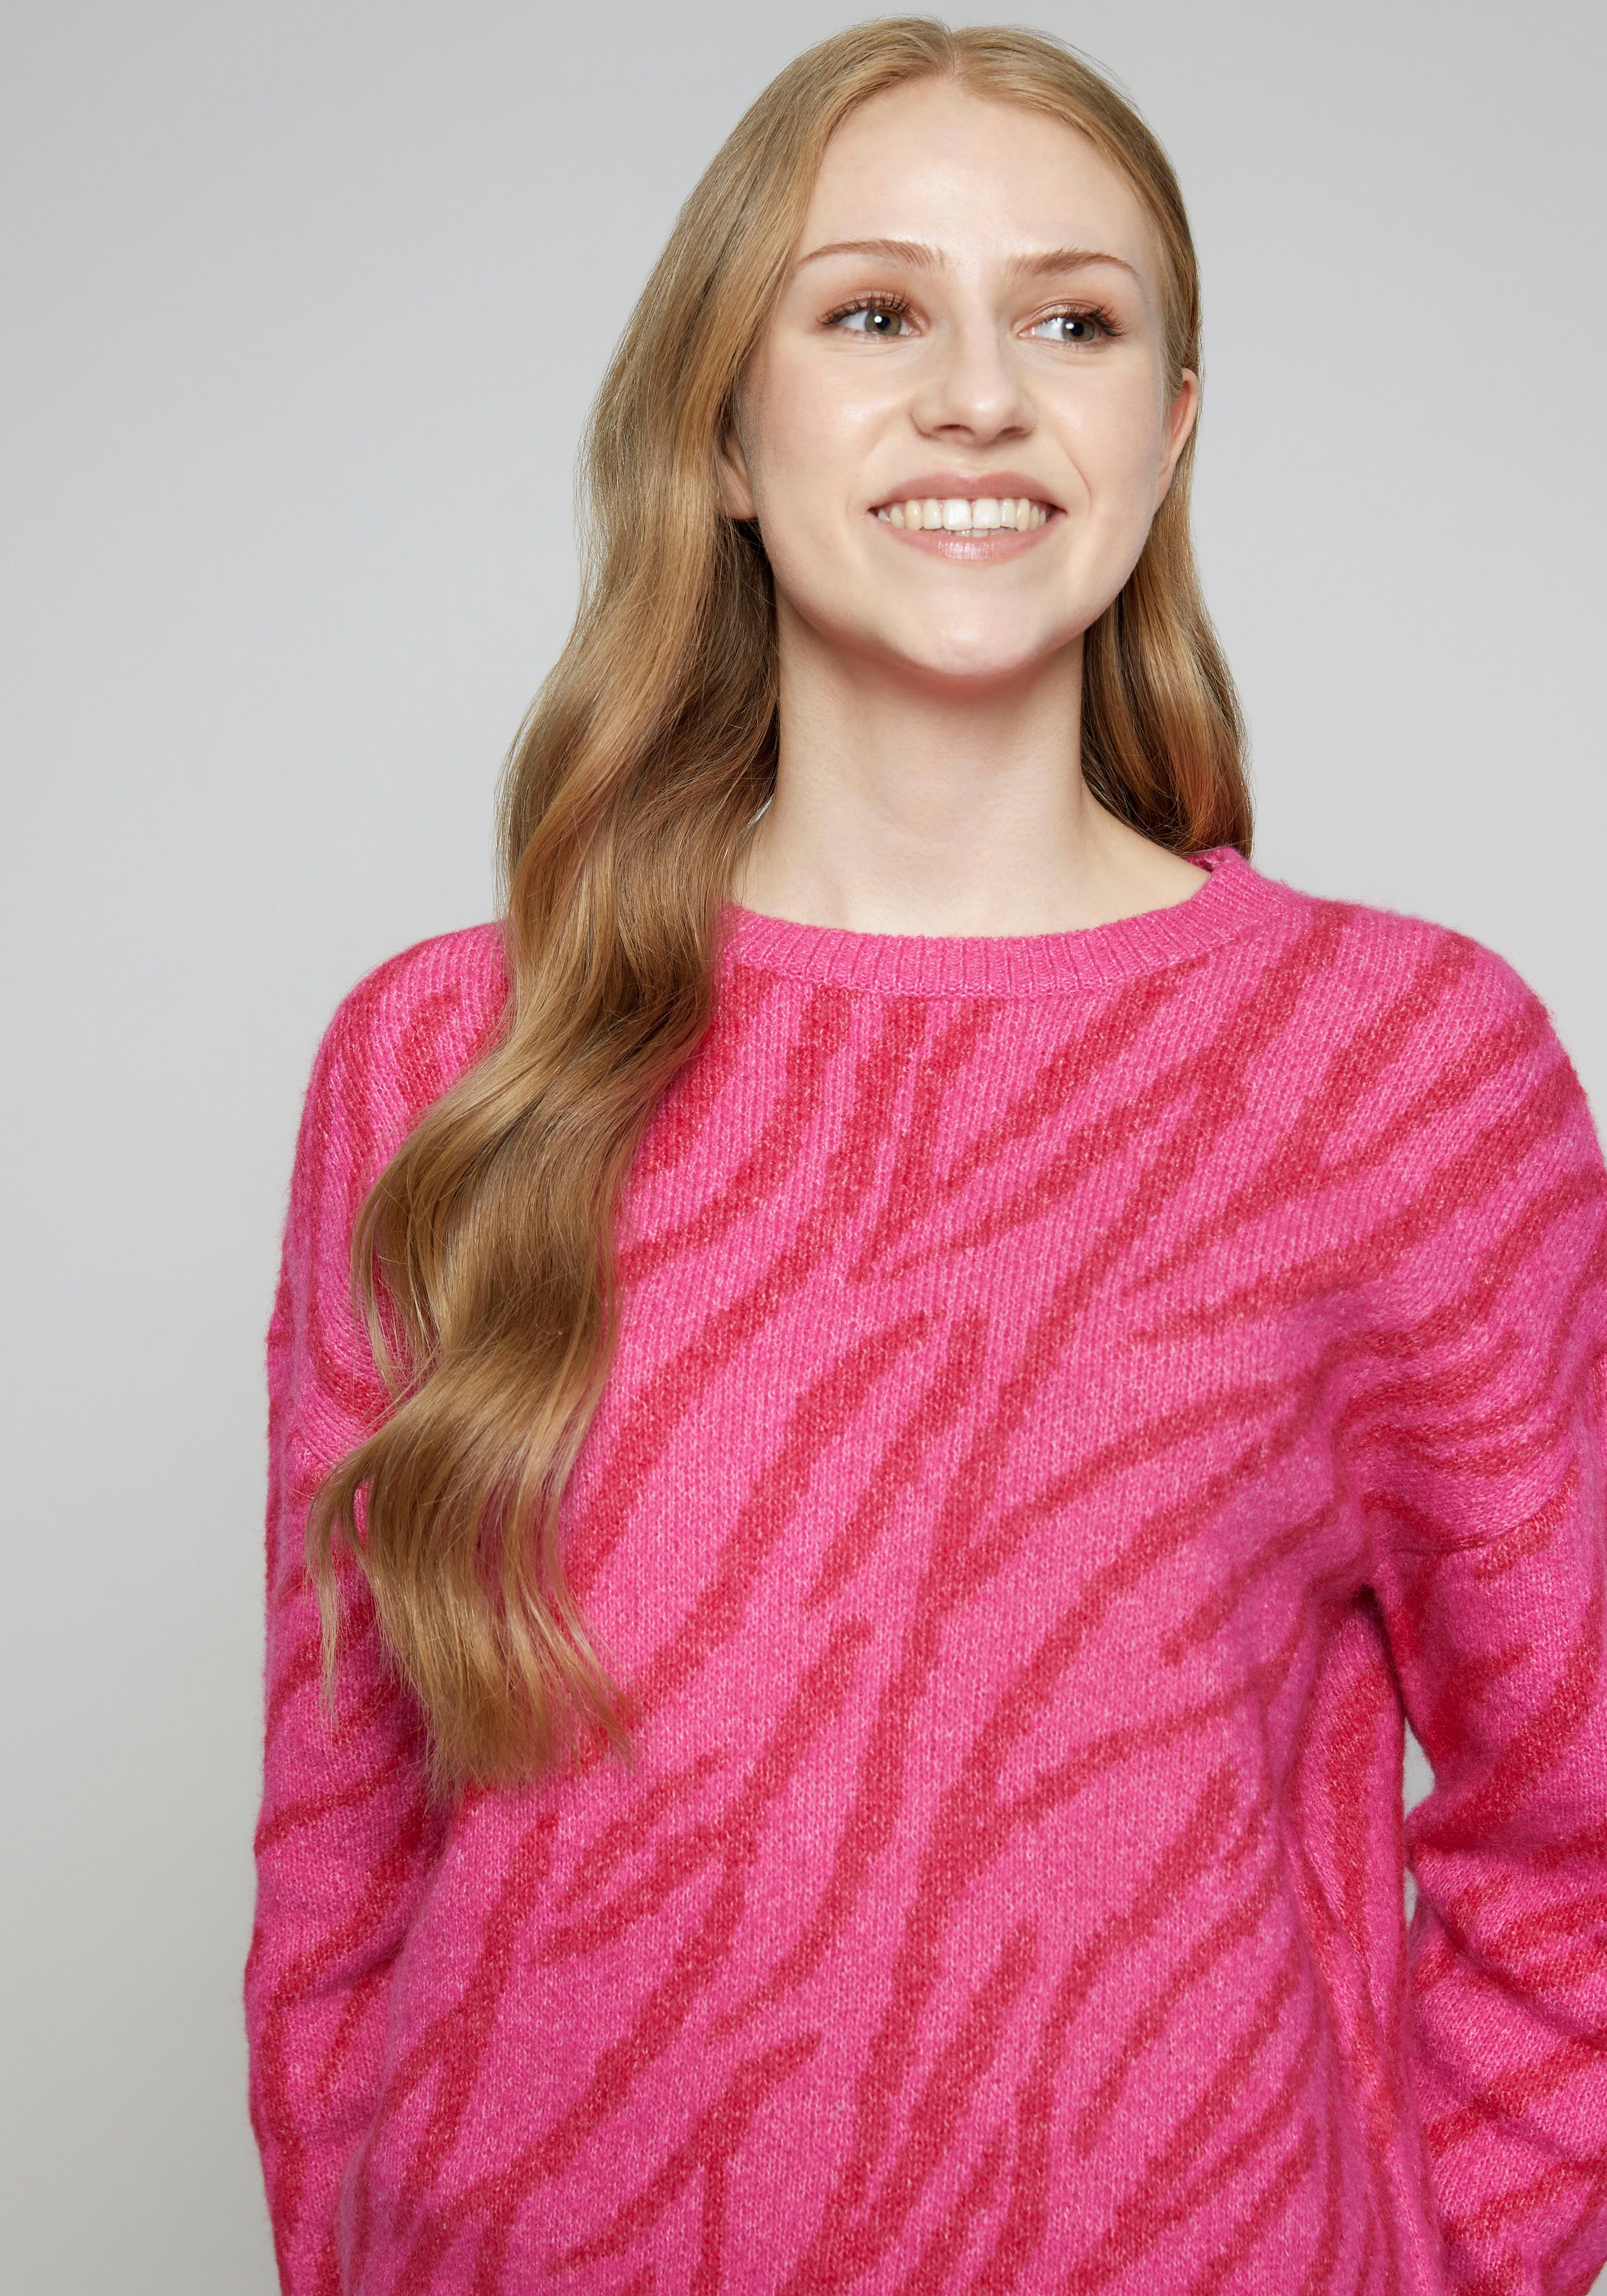 HaILY\'S Pullover für Damen online kaufen | OTTO